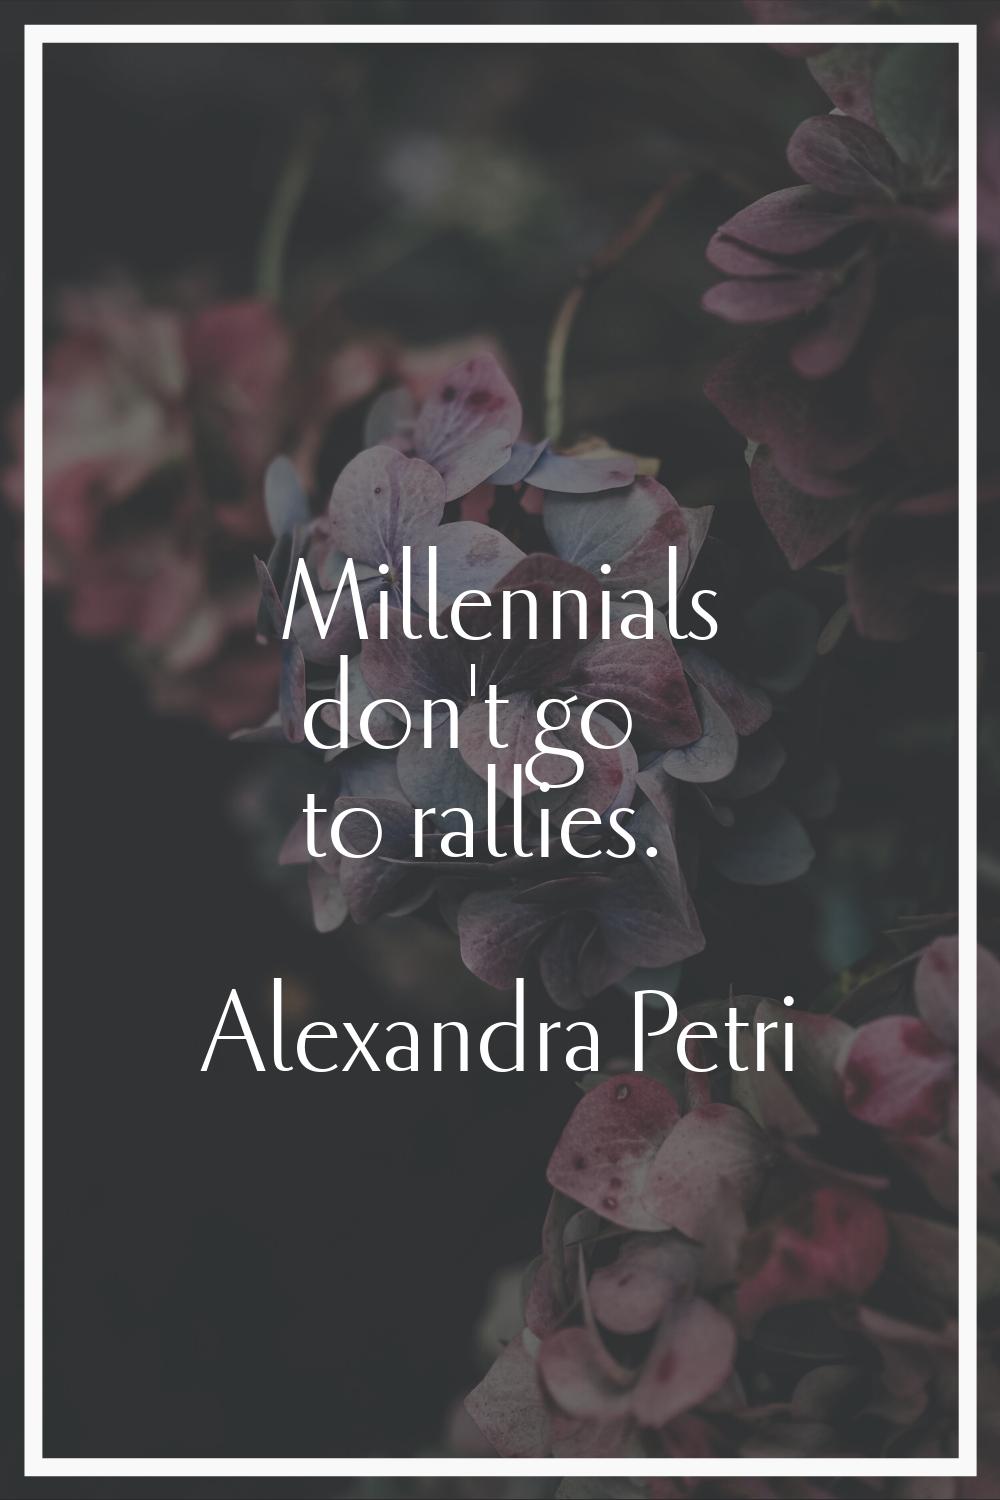 Millennials don't go to rallies.